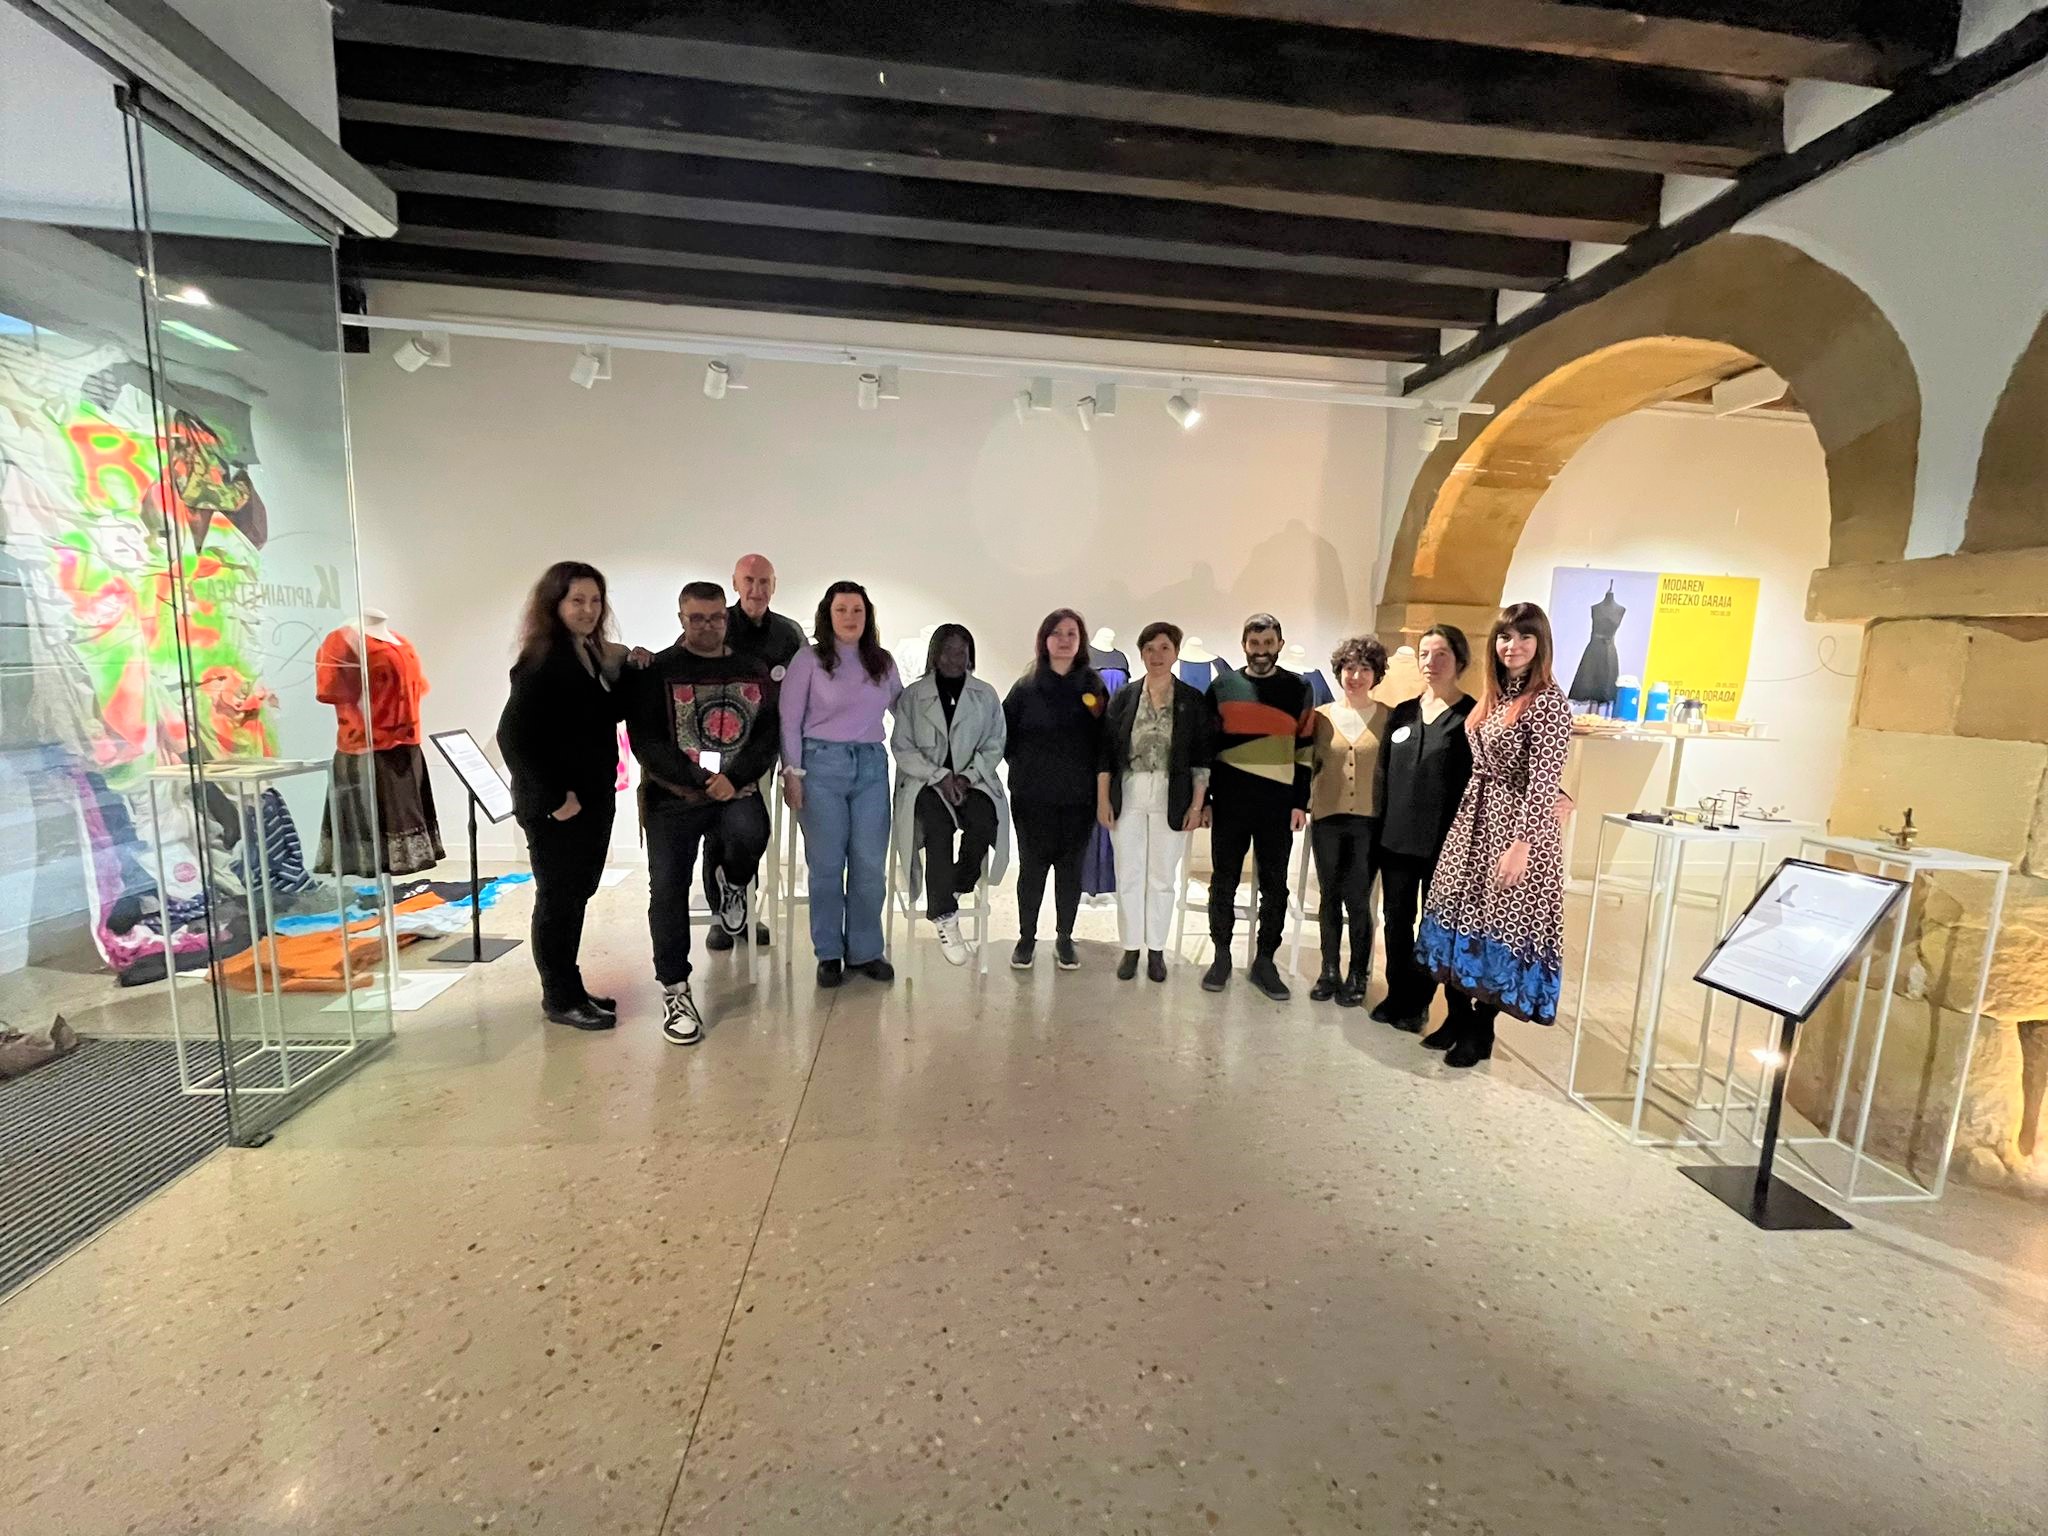 Jantziaren Zentroa en Errenteria reúne a las y los creadores de la ‘Exposición de residentes de Habian!’ para presentar sus obras y compartir su trayectoria creativa